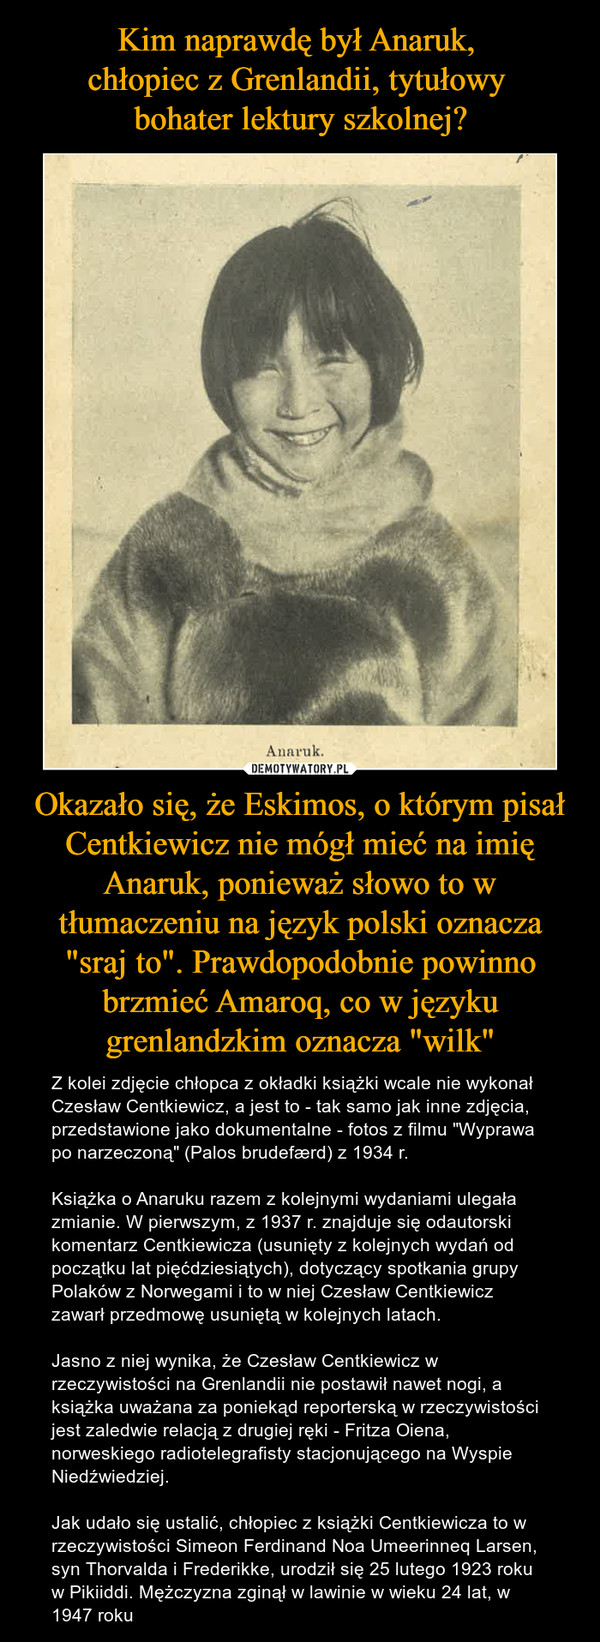 Kim naprawdę był Anaruk, 
chłopiec z Grenlandii, tytułowy 
bohater lektury szkolnej? Okazało się, że Eskimos, o którym pisał Centkiewicz nie mógł mieć na imię Anaruk, ponieważ słowo to w tłumaczeniu na język polski oznacza "sraj to". Prawdopodobnie powinno brzmieć Amaroq, co w języku grenlandzkim oznacza "wilk"